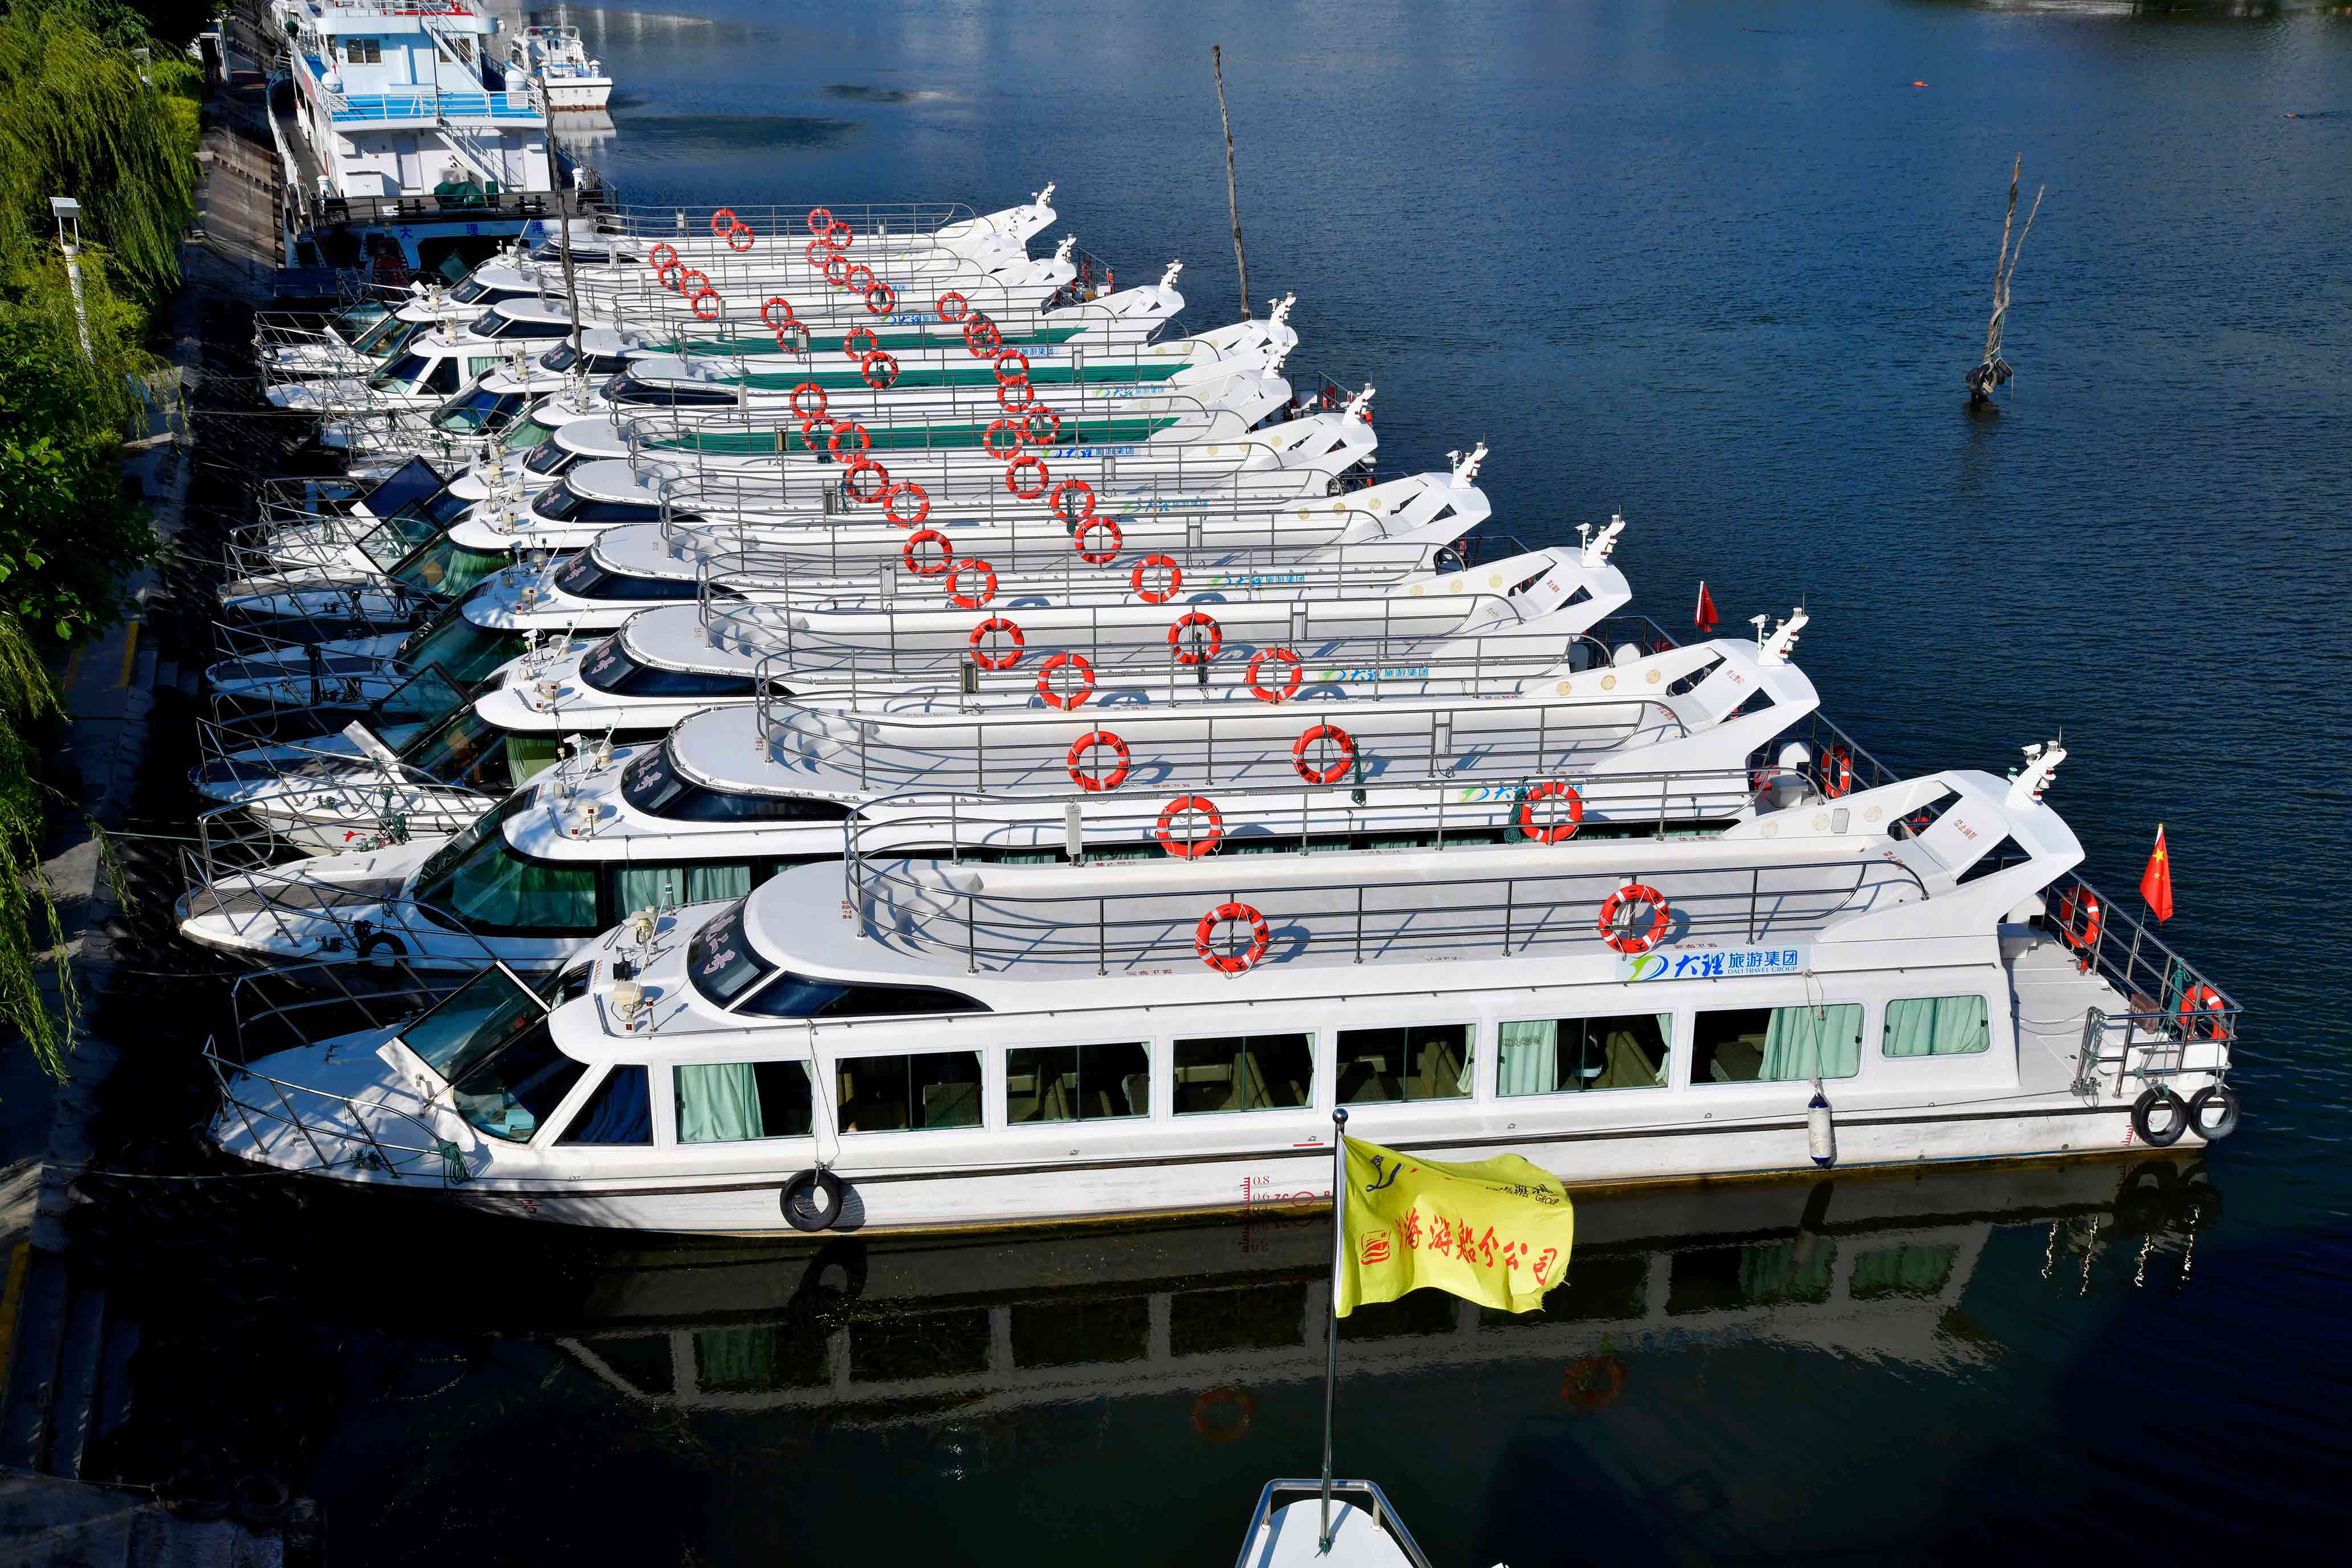 画舫船 14米双层水上餐饮画舫船大型水上餐厅船电动观光游船 木船-阿里巴巴